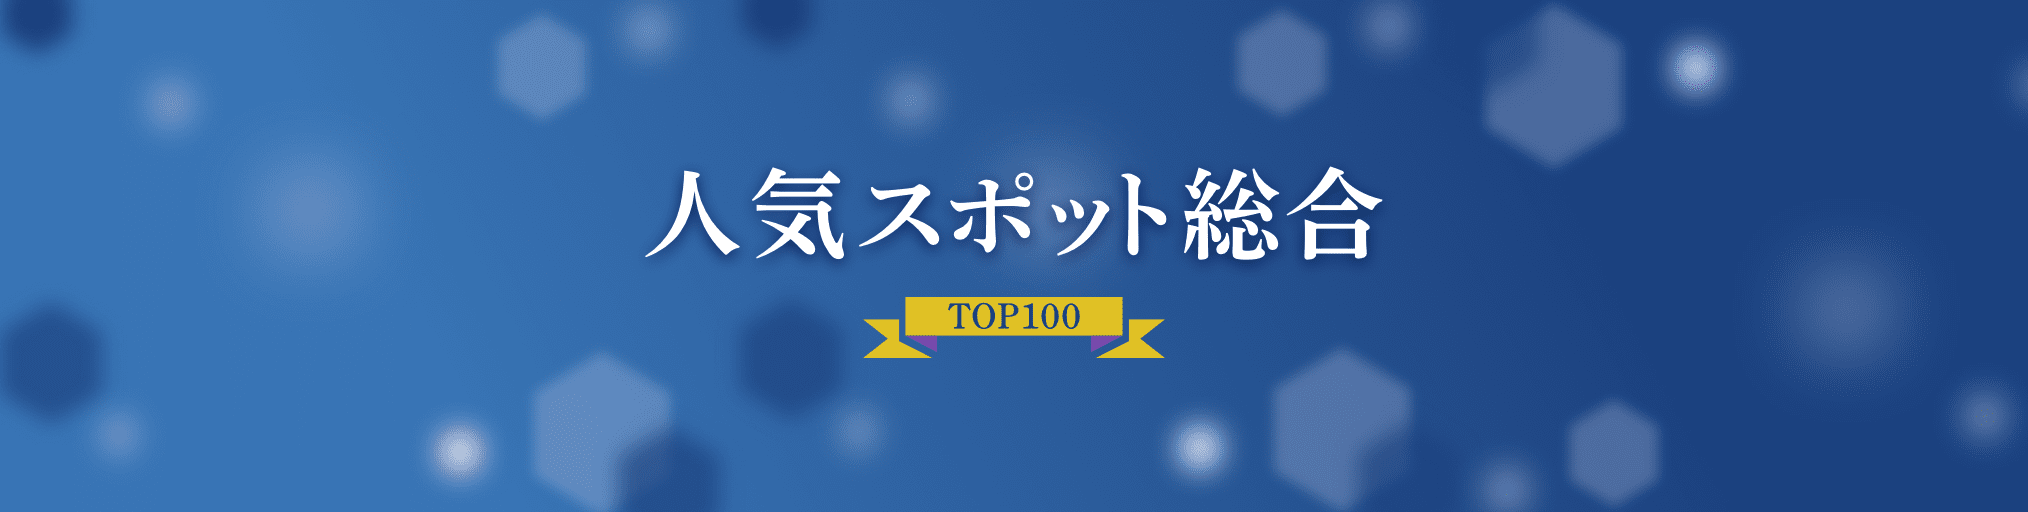 人気スポット総合TOP100